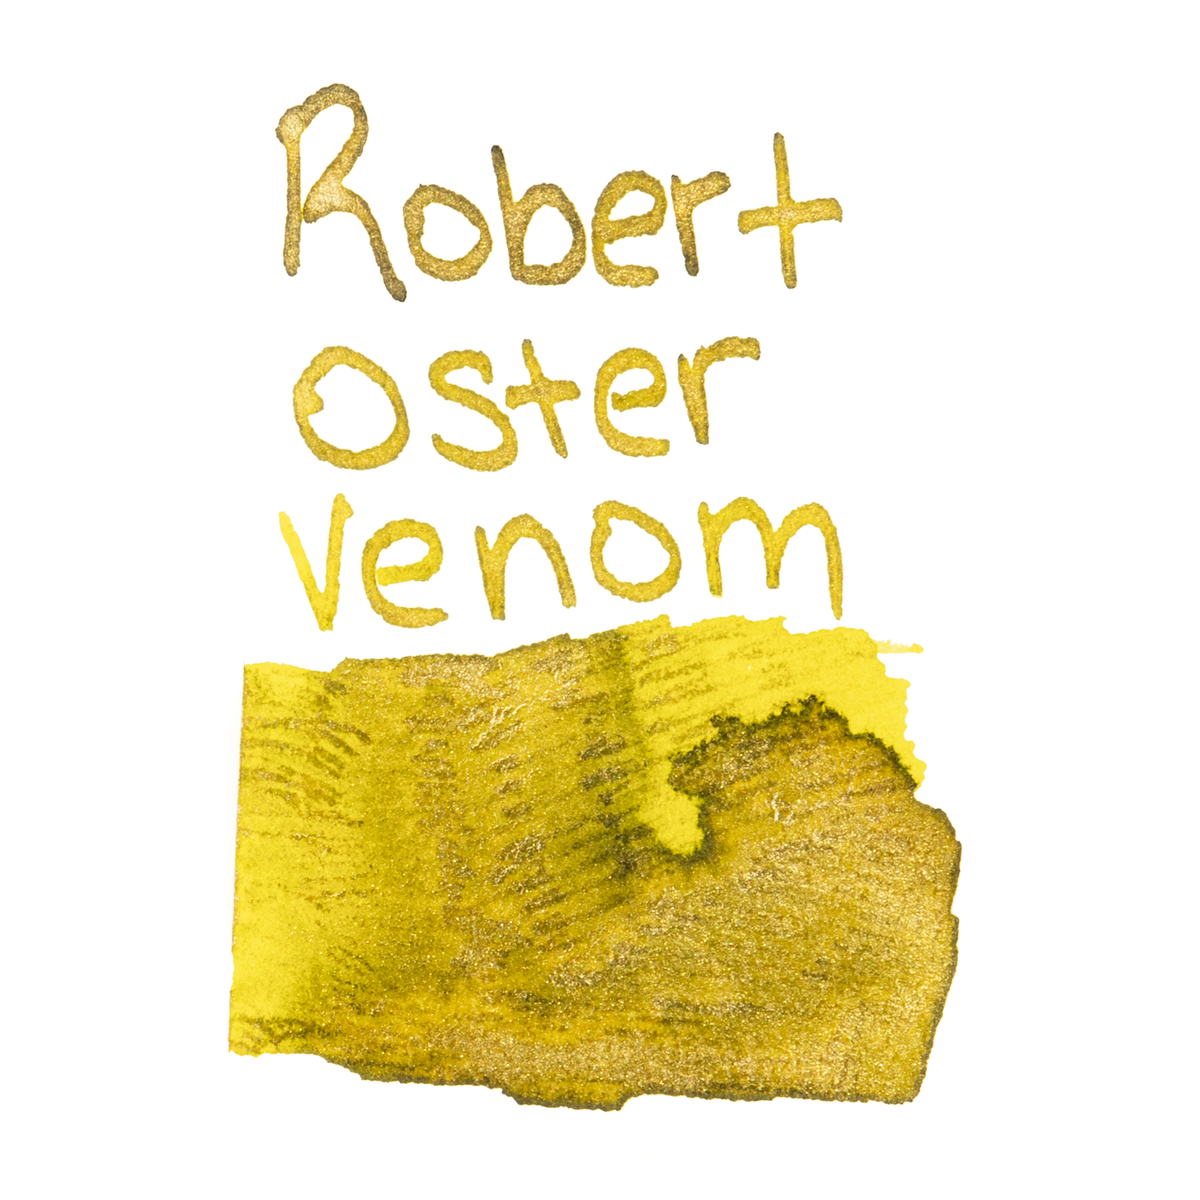 Robert Oster Shake & Shimmer Venom